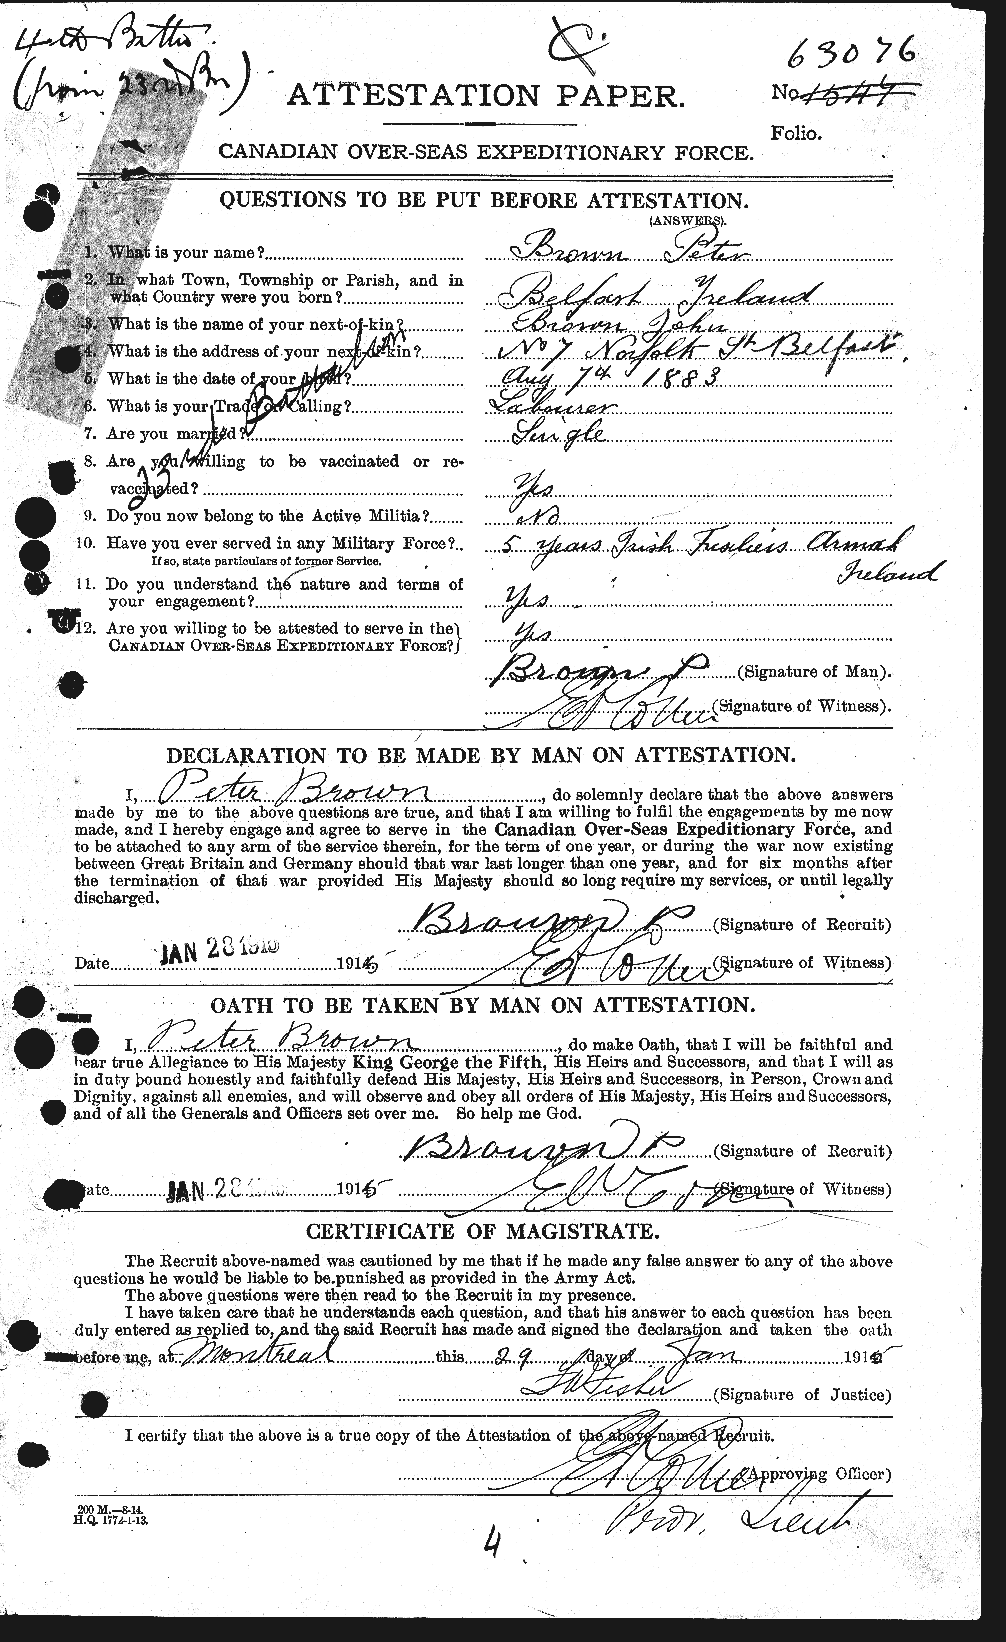 Dossiers du Personnel de la Première Guerre mondiale - CEC 267187a